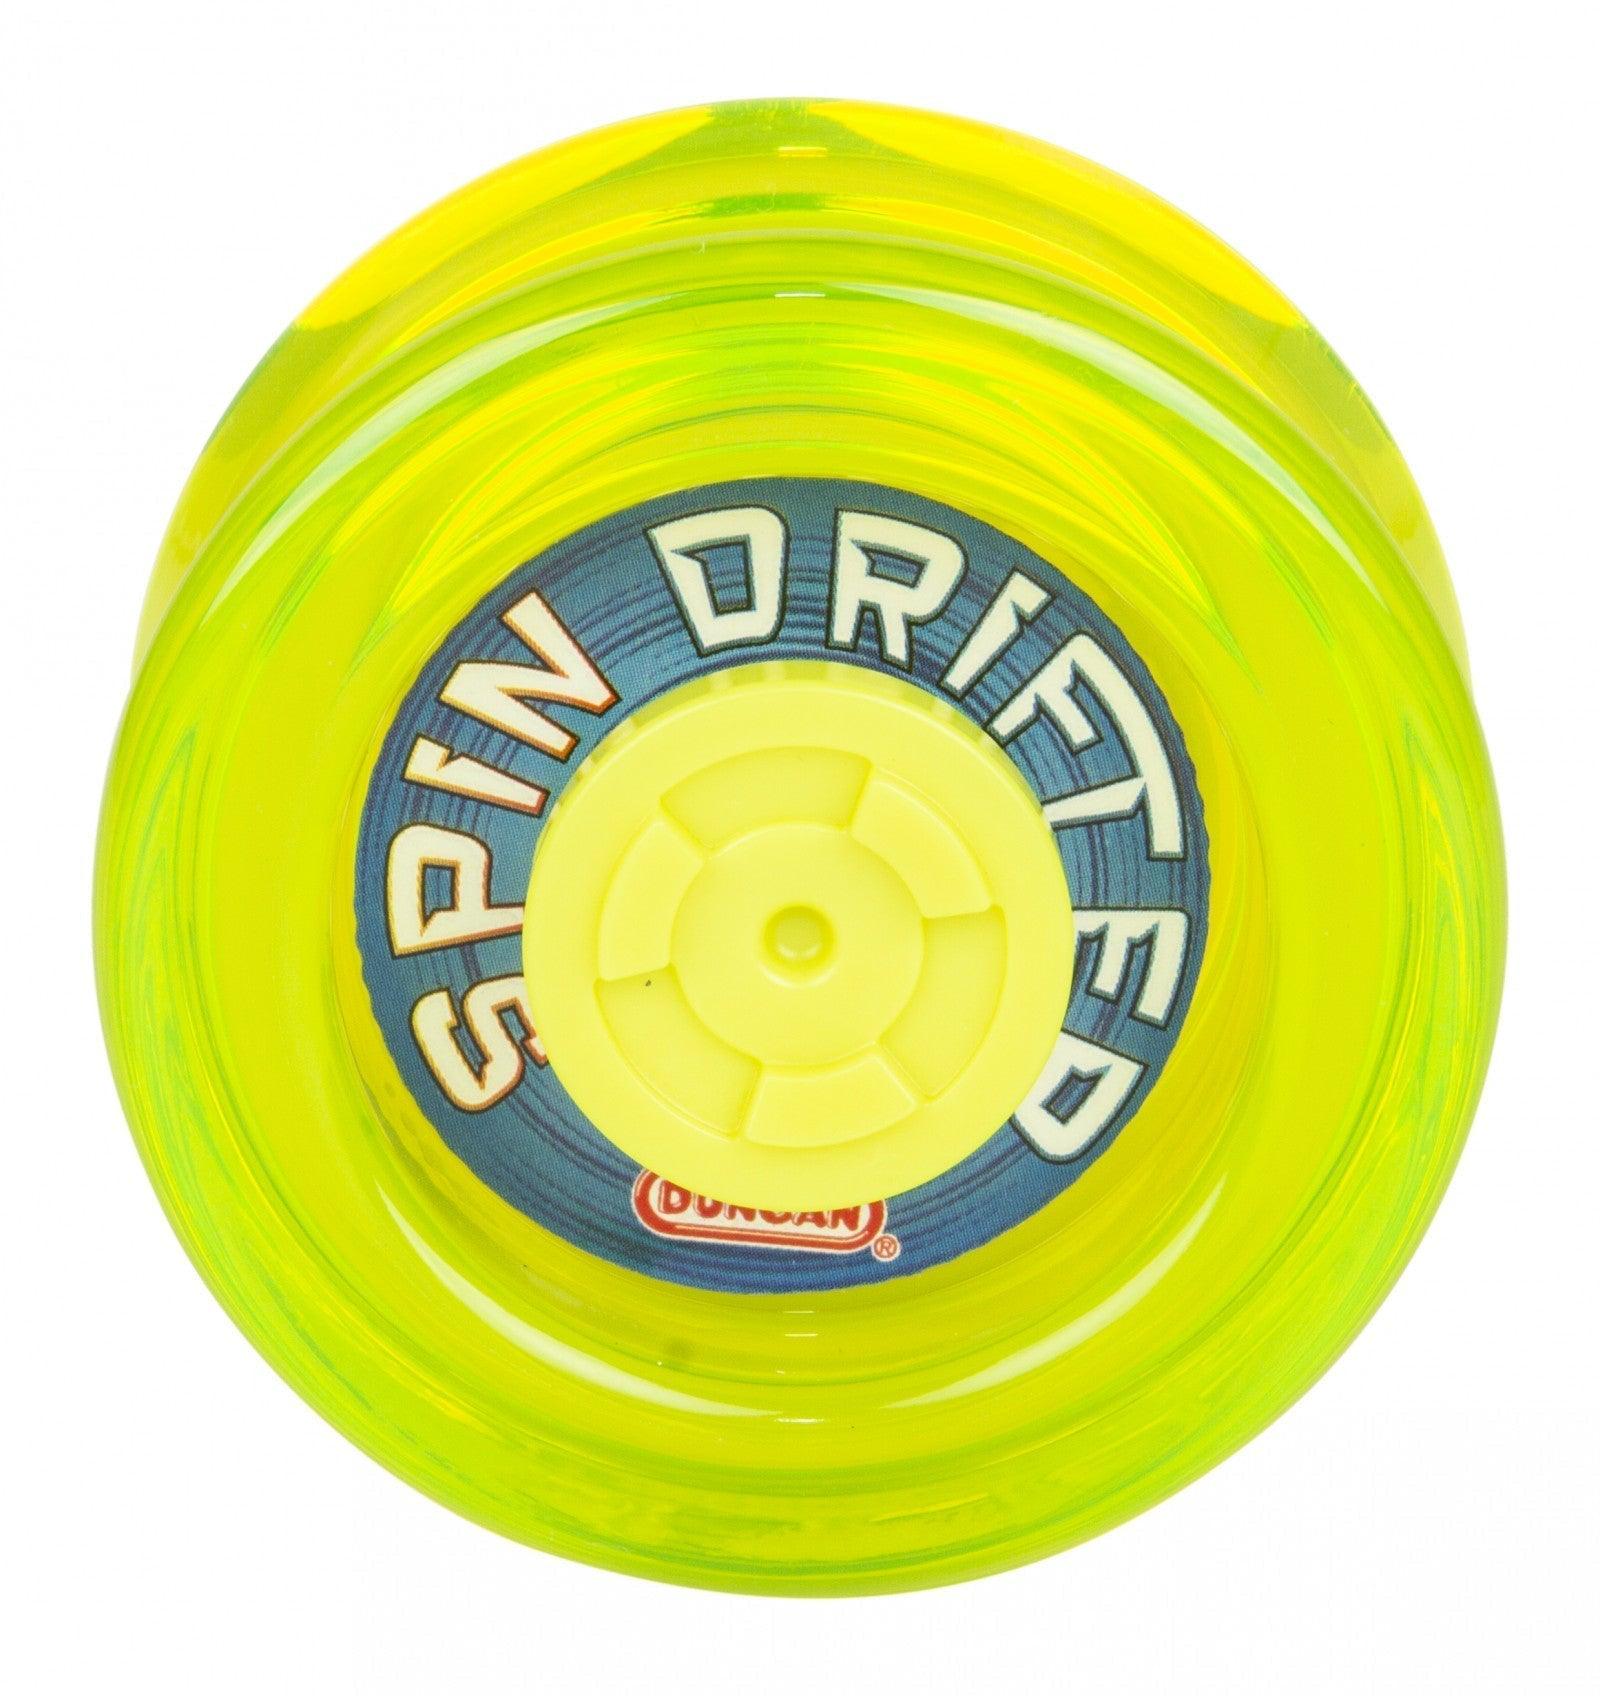 Duncan Yo Yo Beginner Spin Drifter (Assorted Colours) Duncan Titan Pop Culture